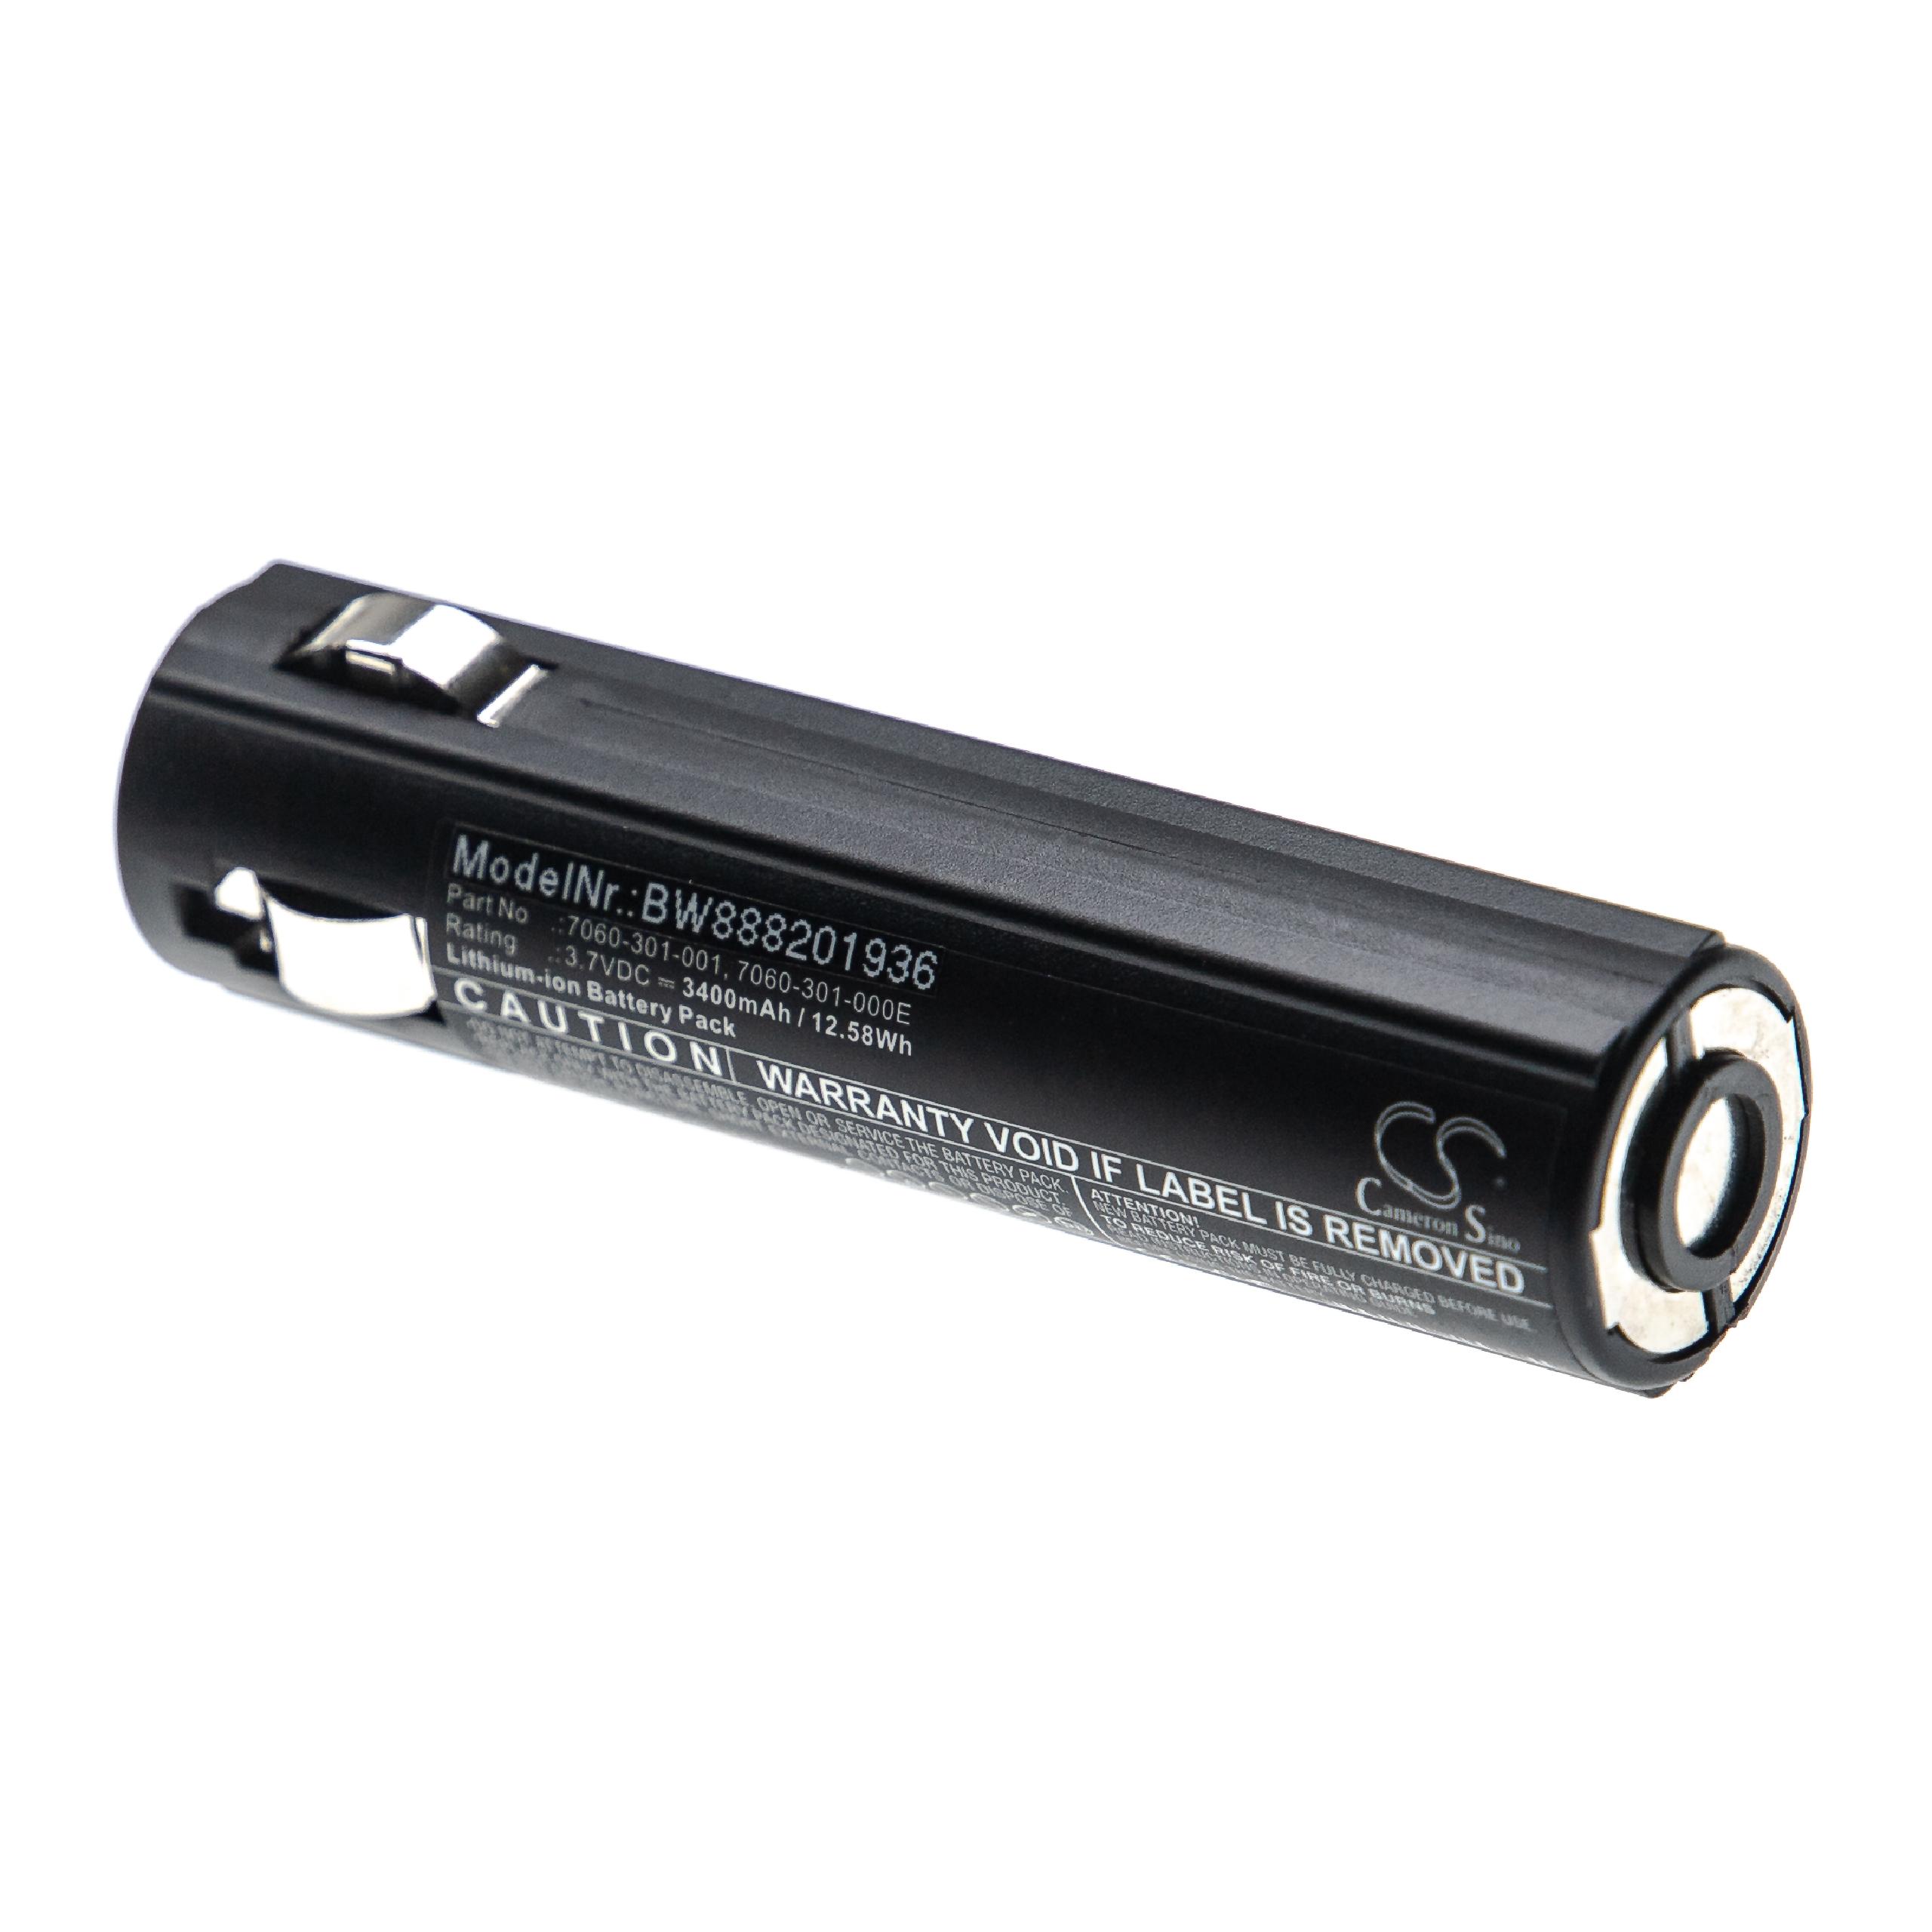 Batterie pour Peli 7060, 7069, 7060-301-000-1, 7060-301-000E, 7060-301-001 pour lampe de poche - 3400mAh 3,7V 